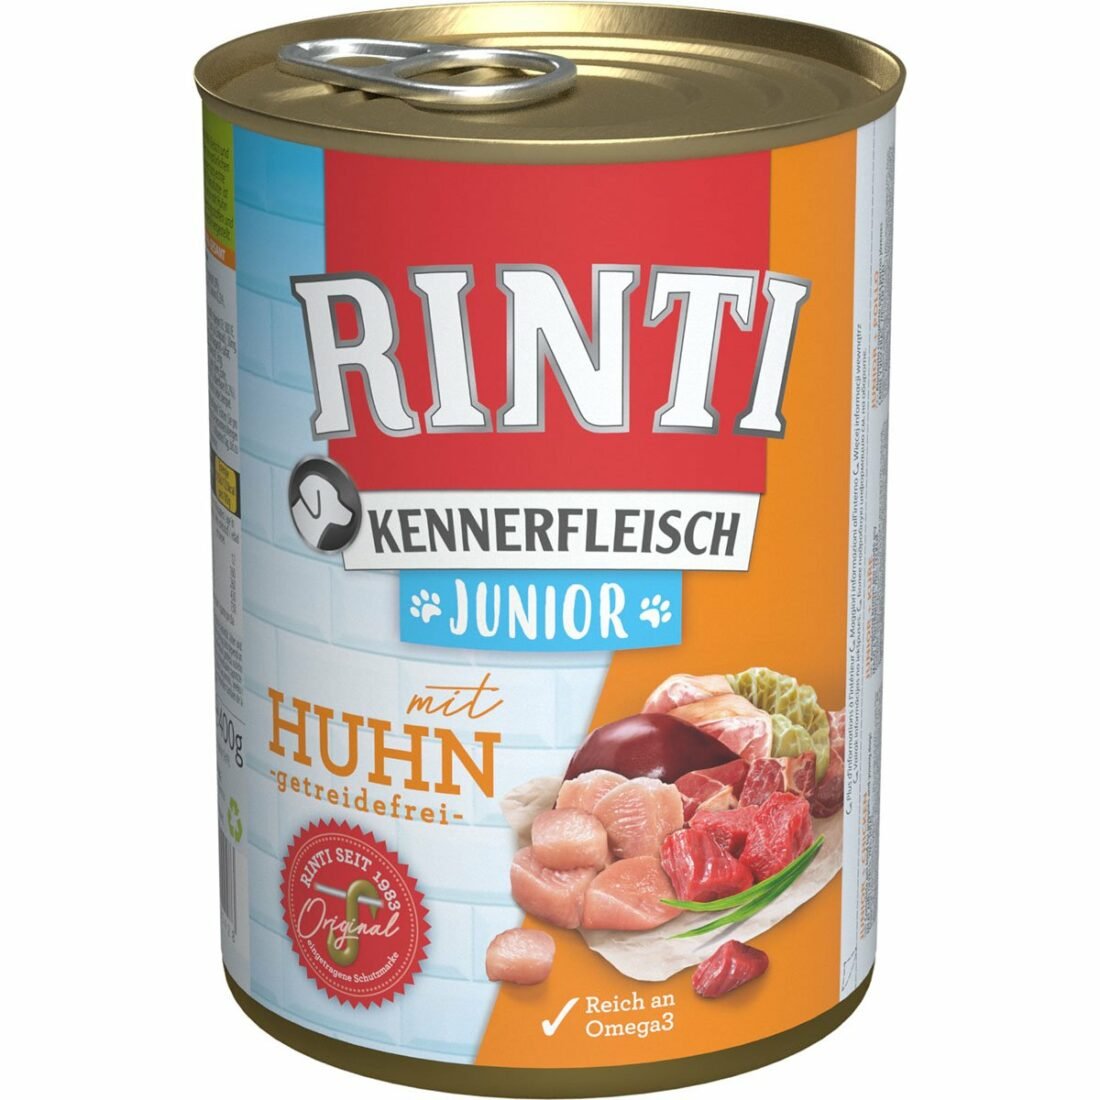 Rinti Kennerfleisch JUNIOR s